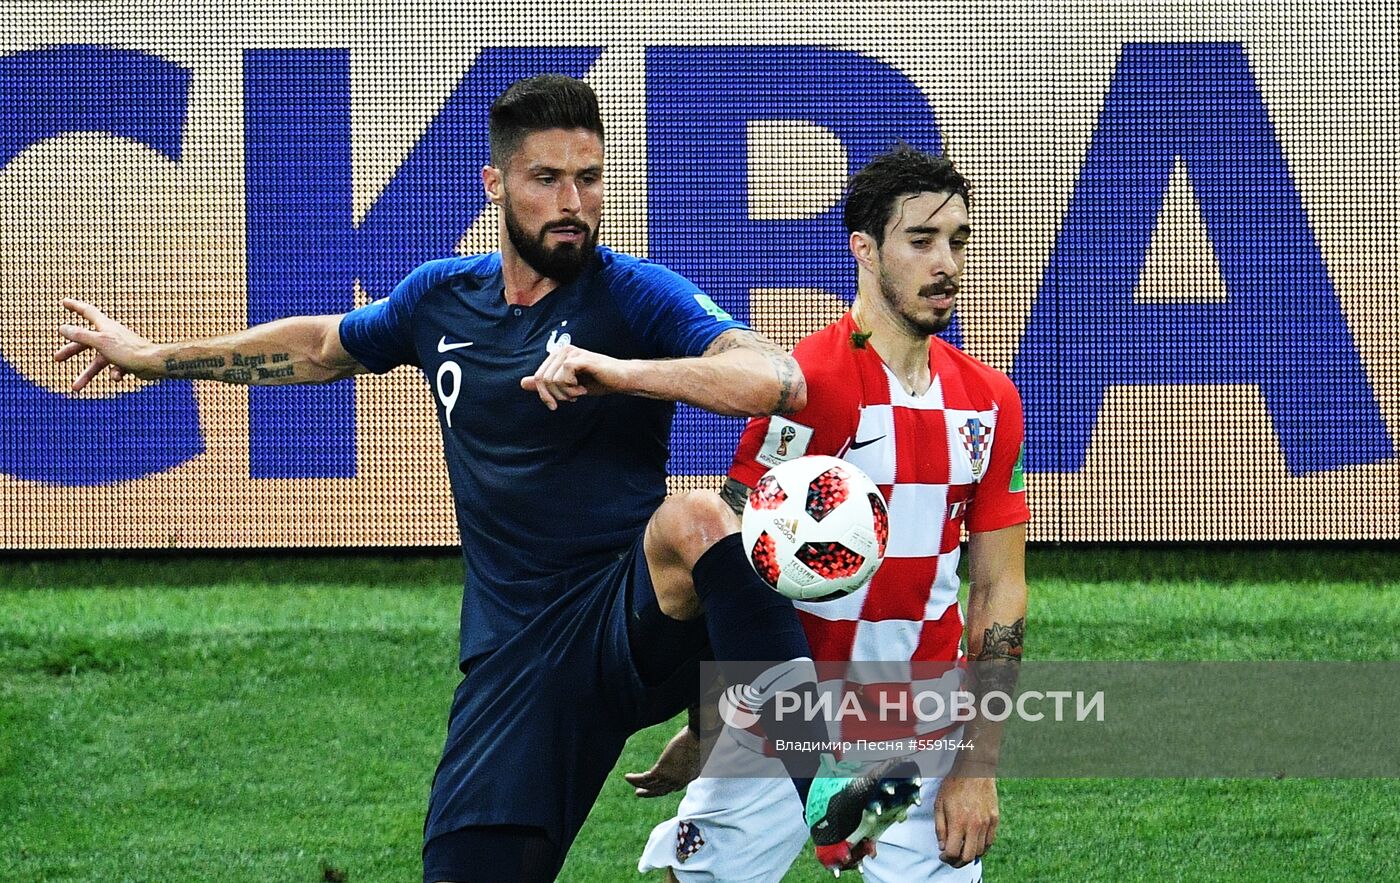 Футбол. ЧМ-2018. Финал. Матч Франция - Хорватия